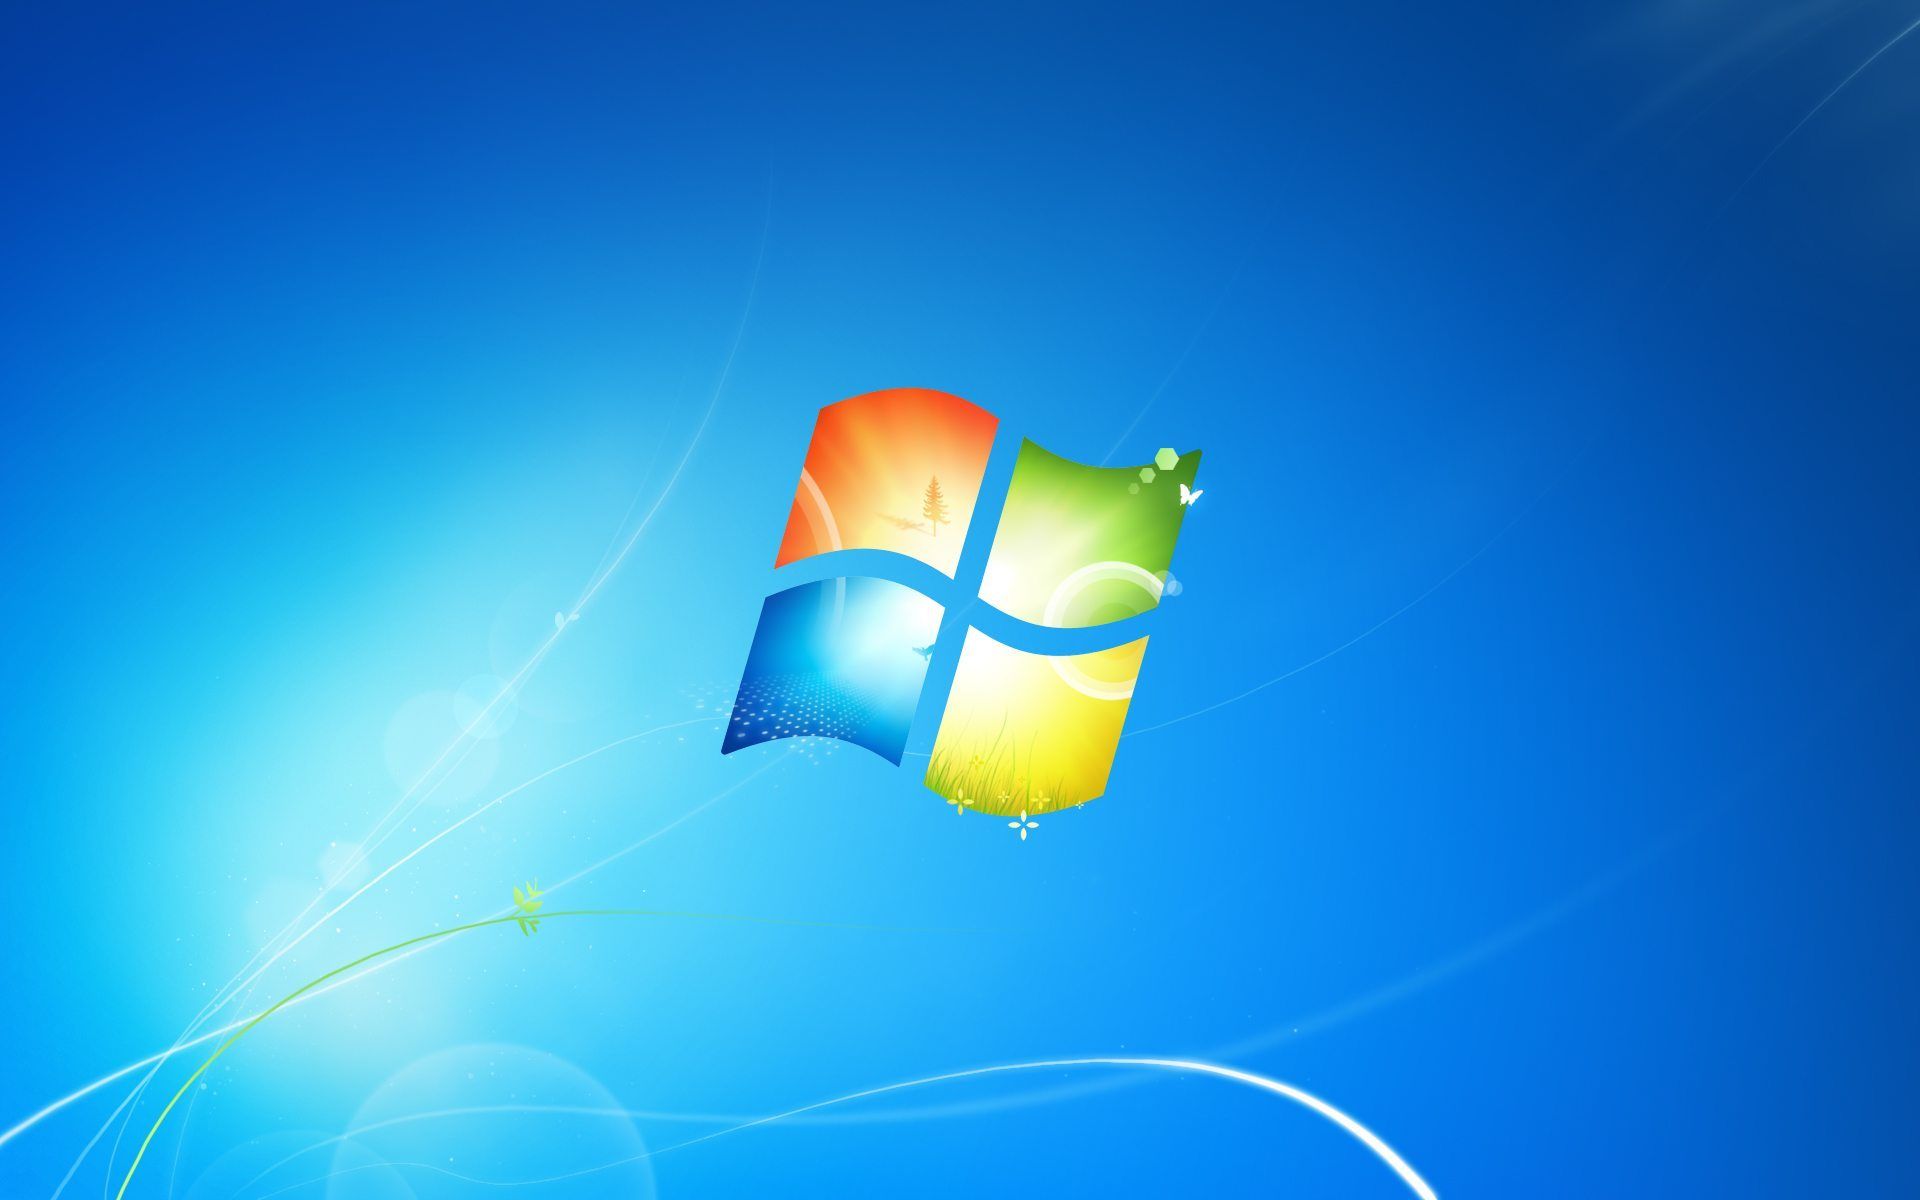 Hình nền máy tính Windows 7 miễn phí là một cách tuyệt vời để bổ sung cho máy tính của bạn những hình ảnh độc đáo và đẹp mắt. Bạn có thể tùy chỉnh màn hình của mình với những bức hình đa dạng và độc đáo, mang lại sự phù hợp và phong cách cho màn hình của bạn.